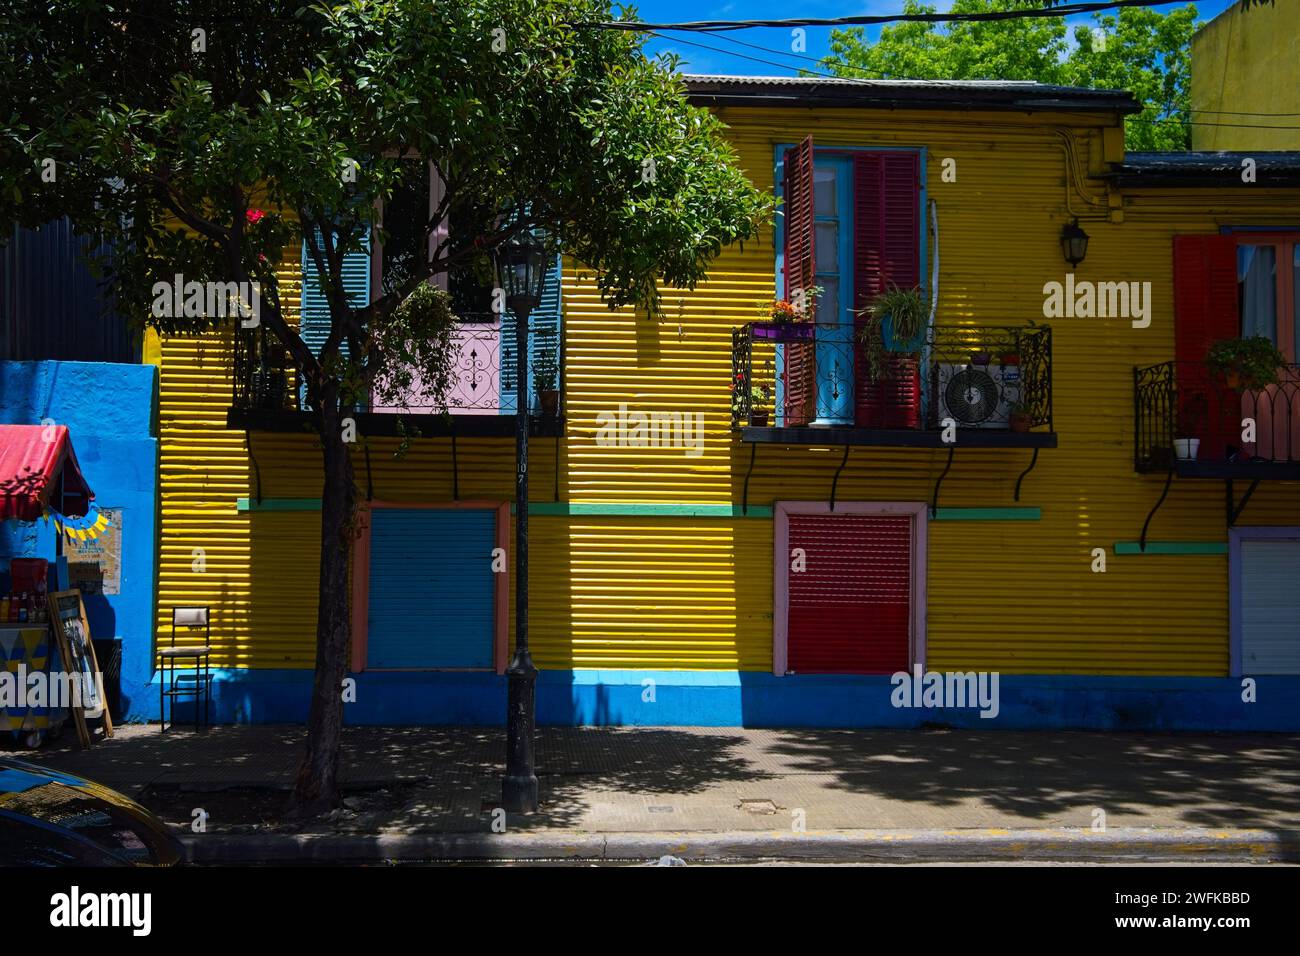 La Boca ist ein Arbeiterviertel mit farbenfrohen Attraktionen in der Nähe des Riachuelo River. Caminito ist umgeben von Steakhäusern und Straßenkünstlern. Stockfoto